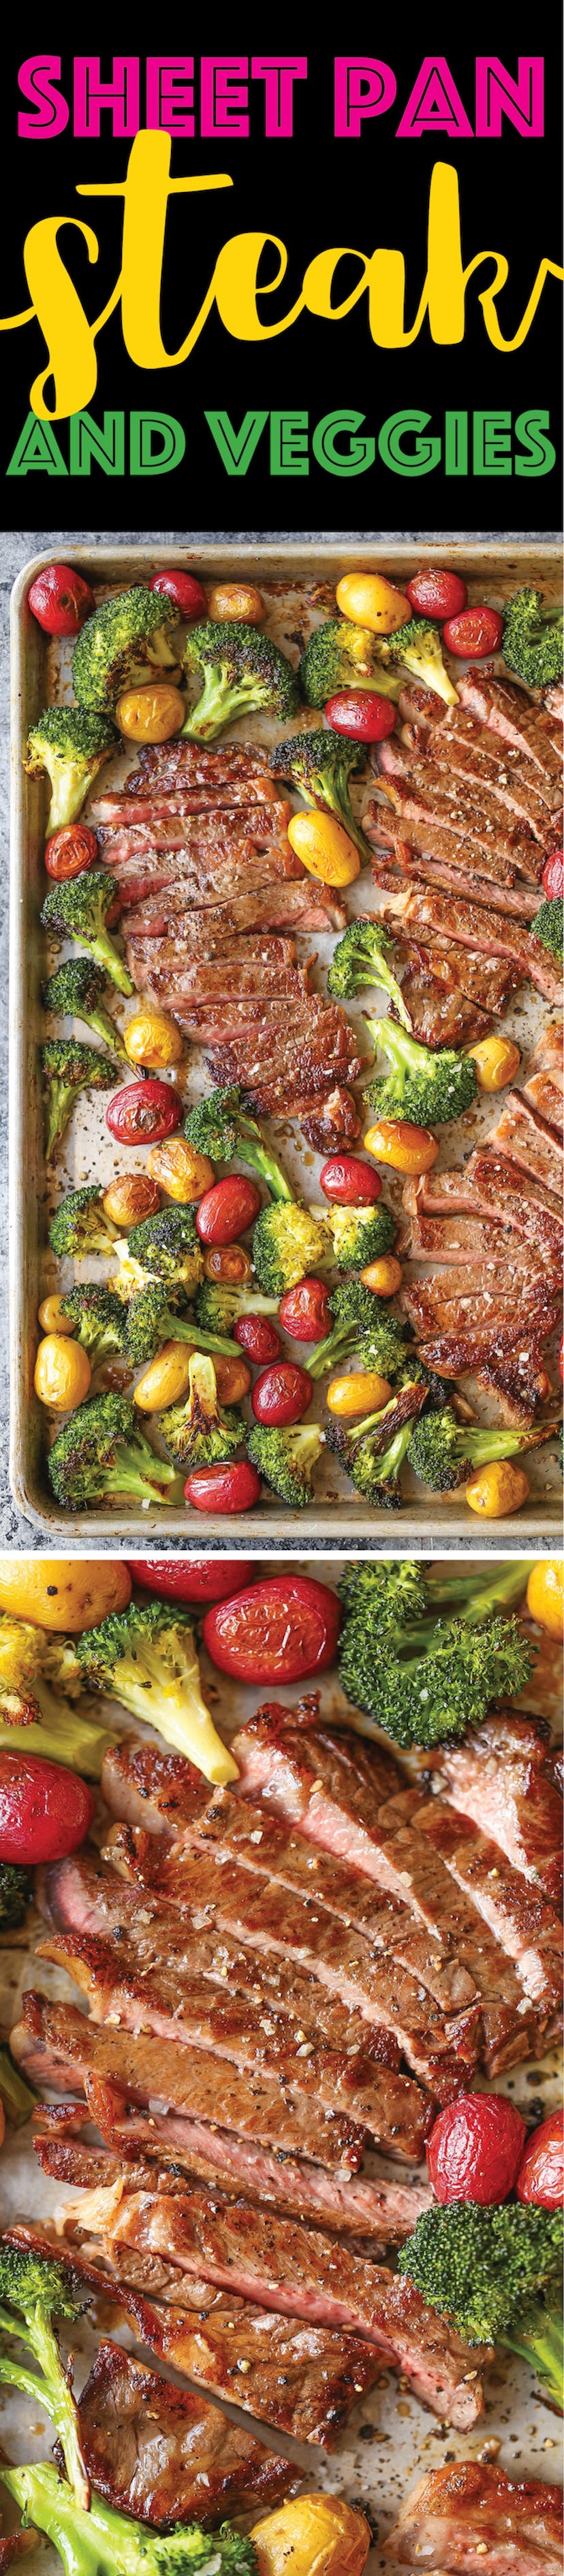 sheet pan recipes with steak, sheet pan steak and veggies